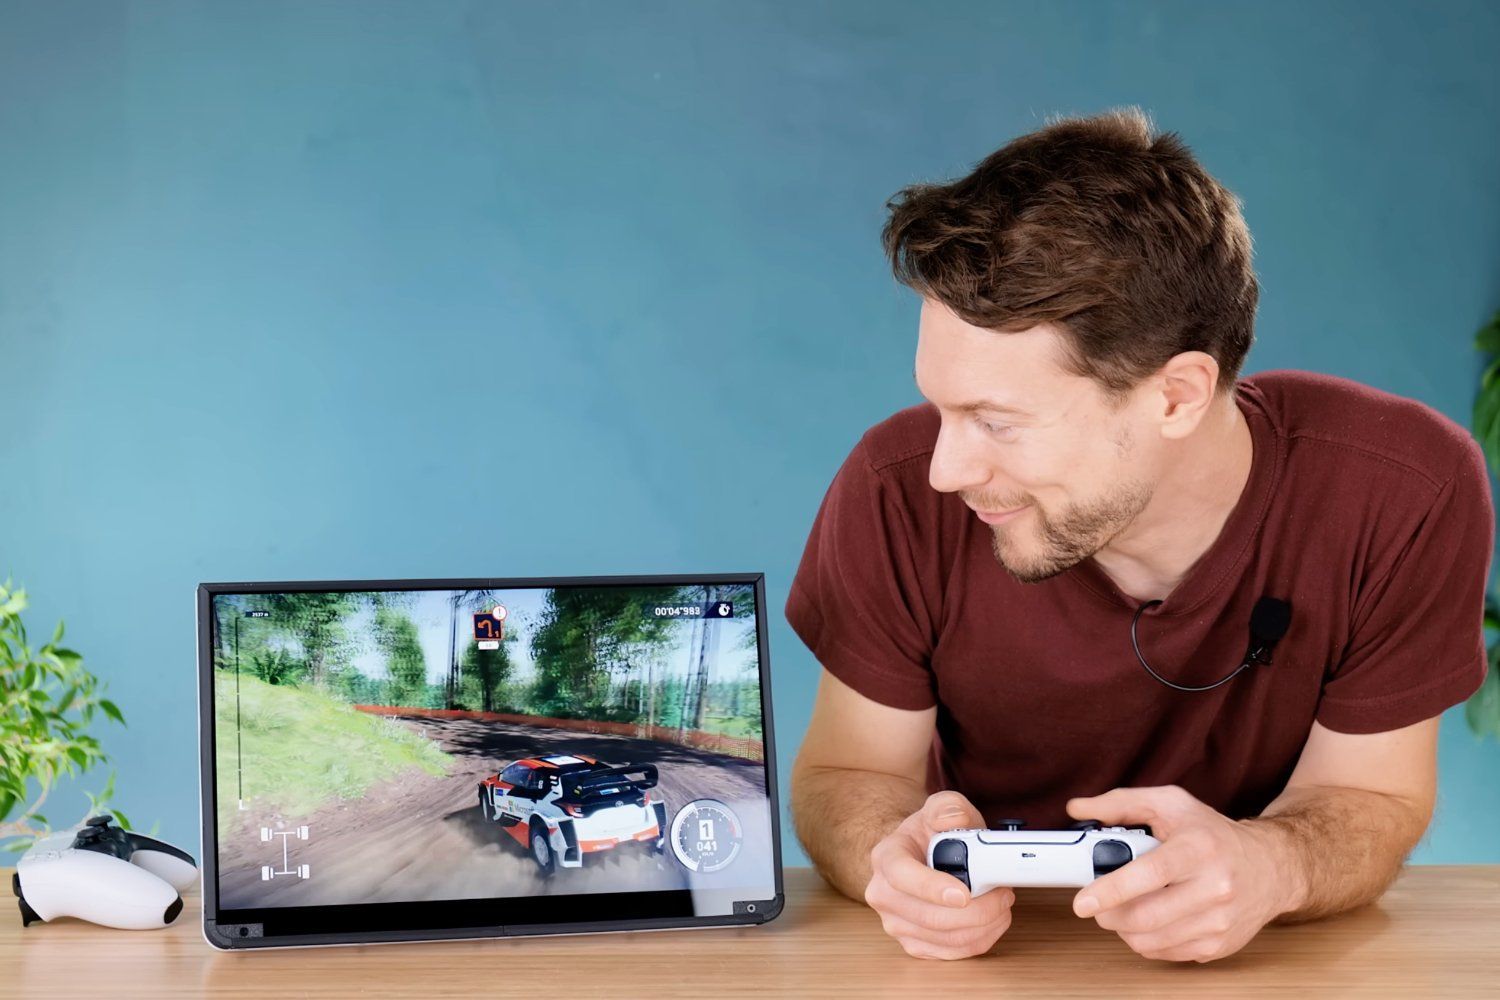 Ce youtubeur créé la PS5 qui fait rêver des millions de joueurs